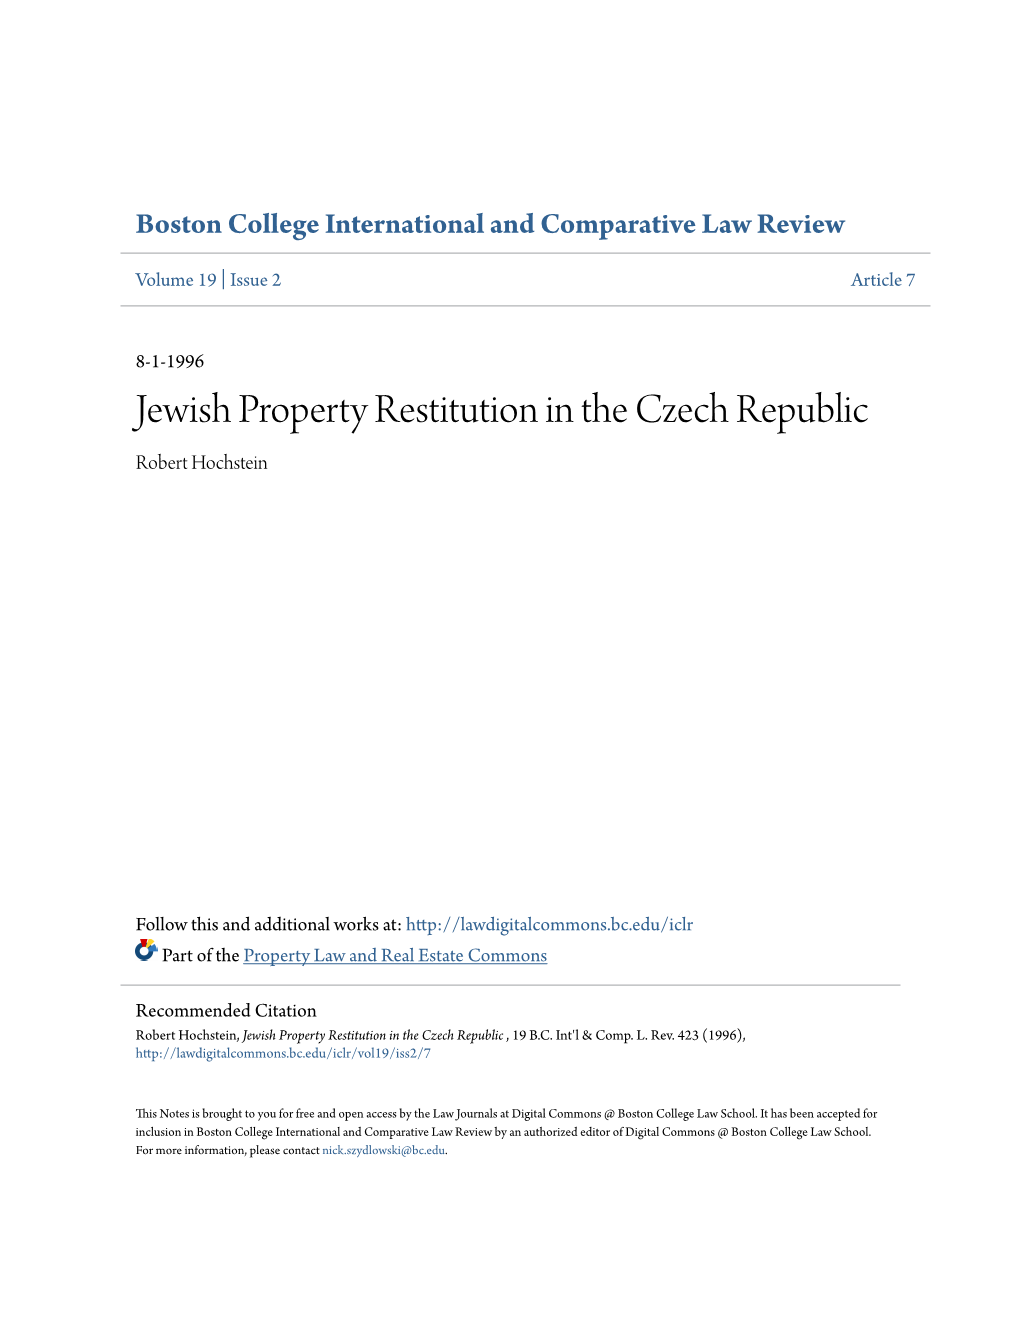 Jewish Property Restitution in the Czech Republic Robert Hochstein